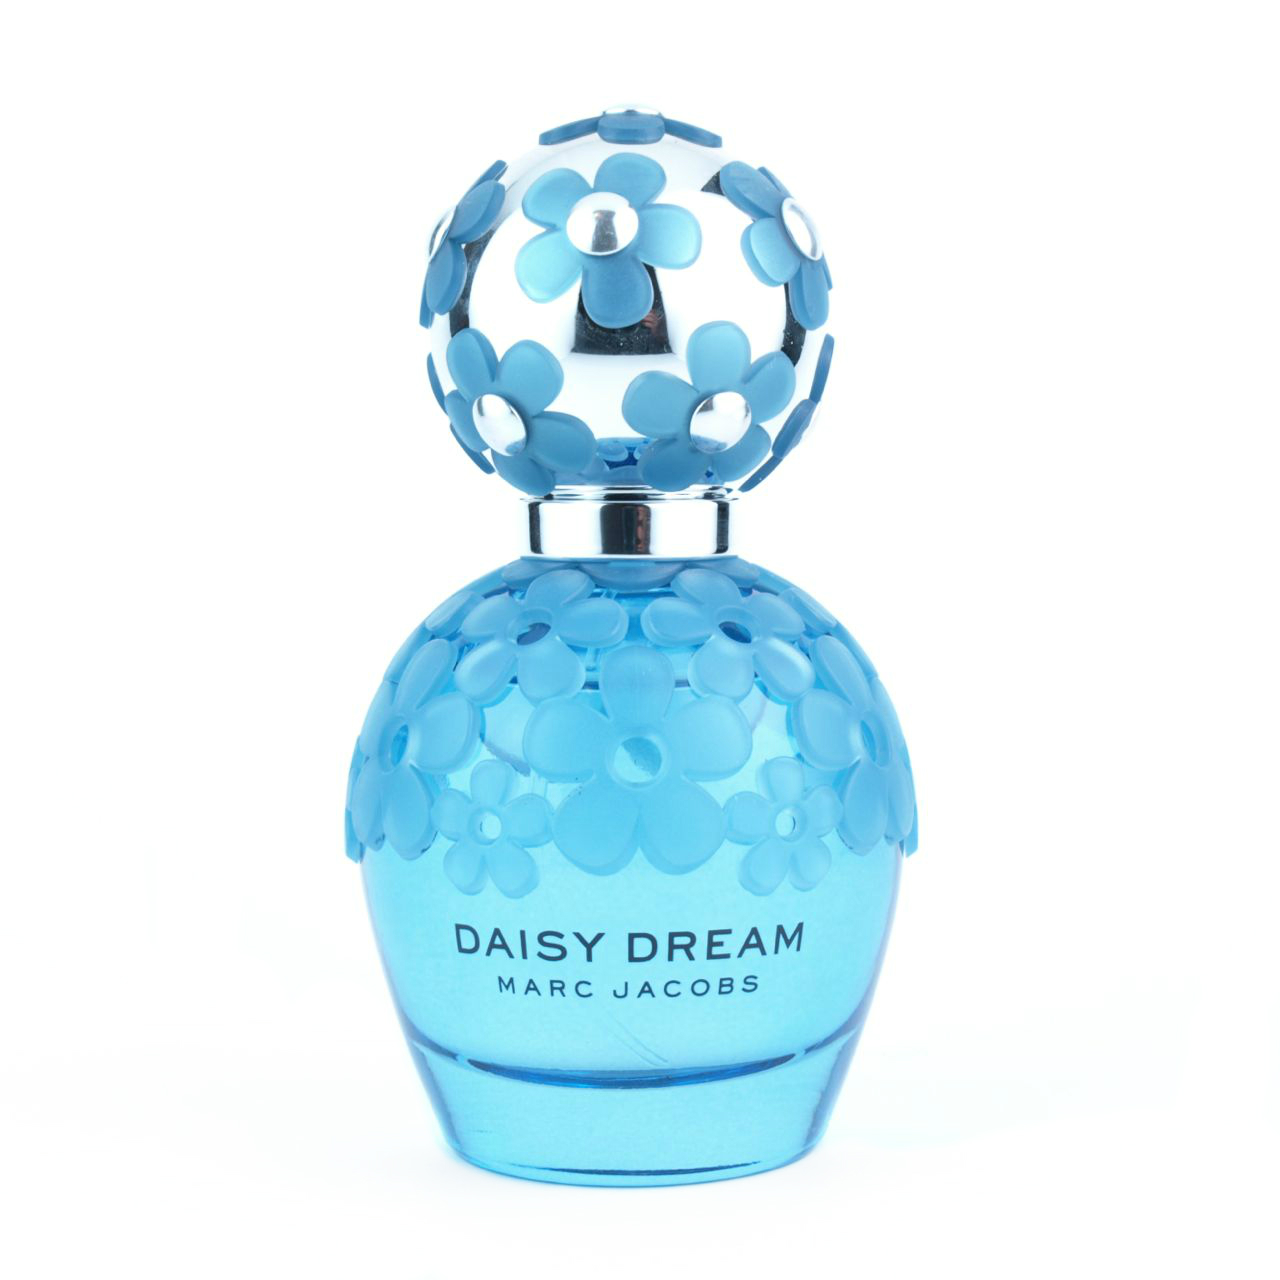 Marc Jacobs Daisy Dream Forever Eau de Parfum: Review